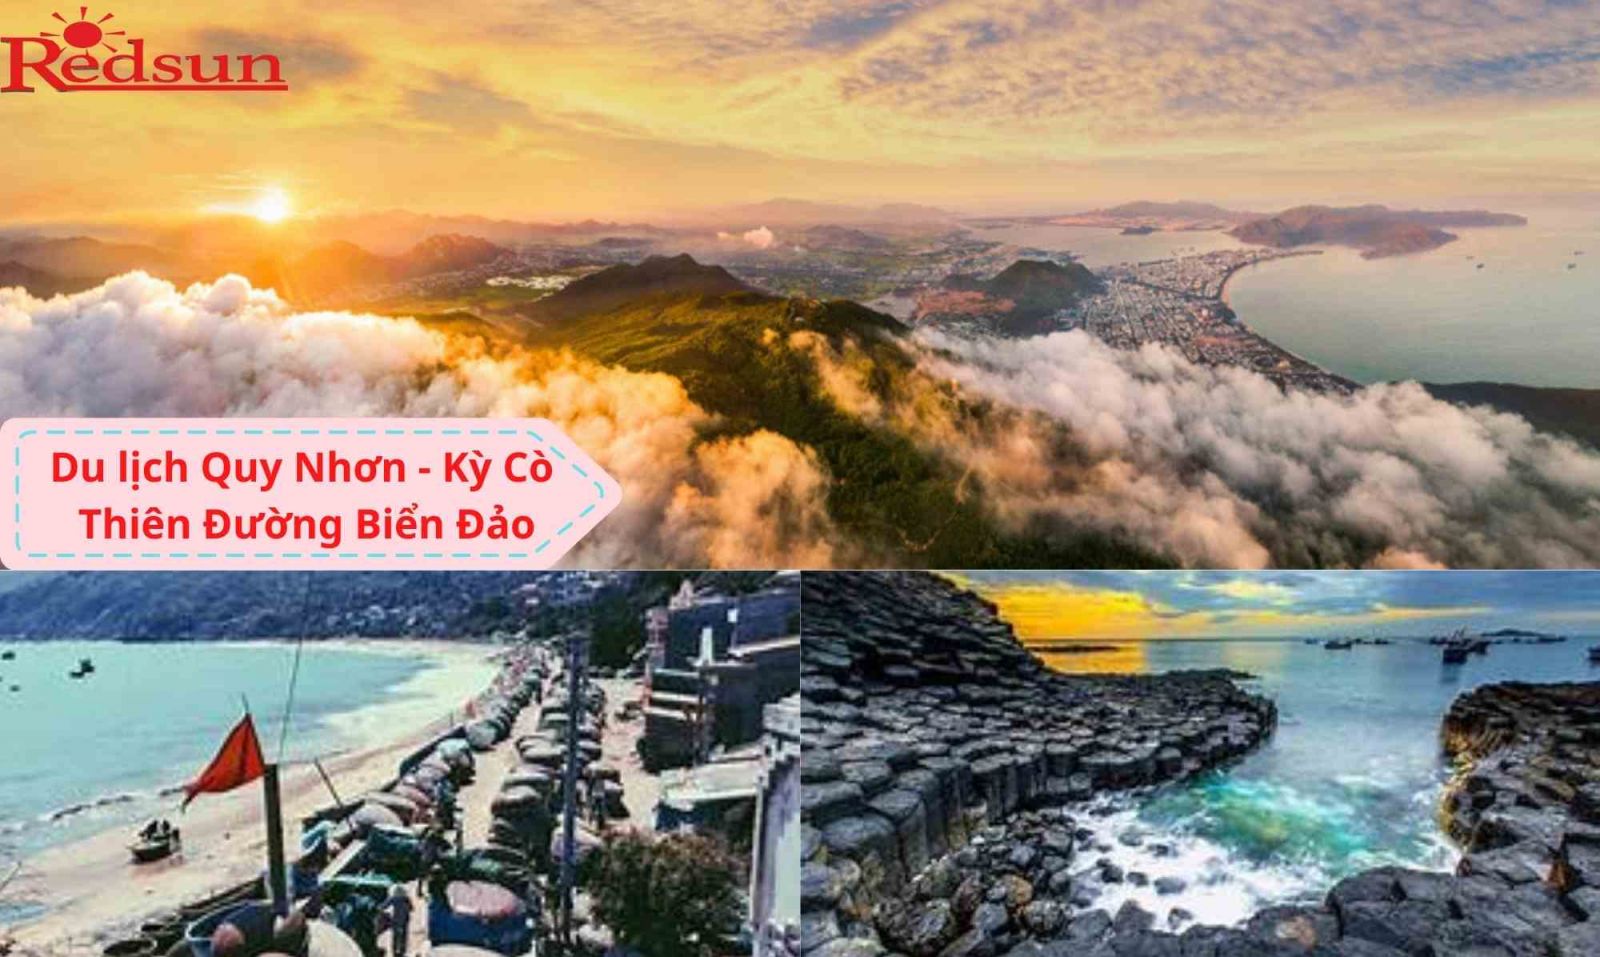 Du lịch taijQuy Nhơn - Kỳ Cò - Thiên Đường Biển Đảo 3 ngày 2 đêm cùng Red Sun 